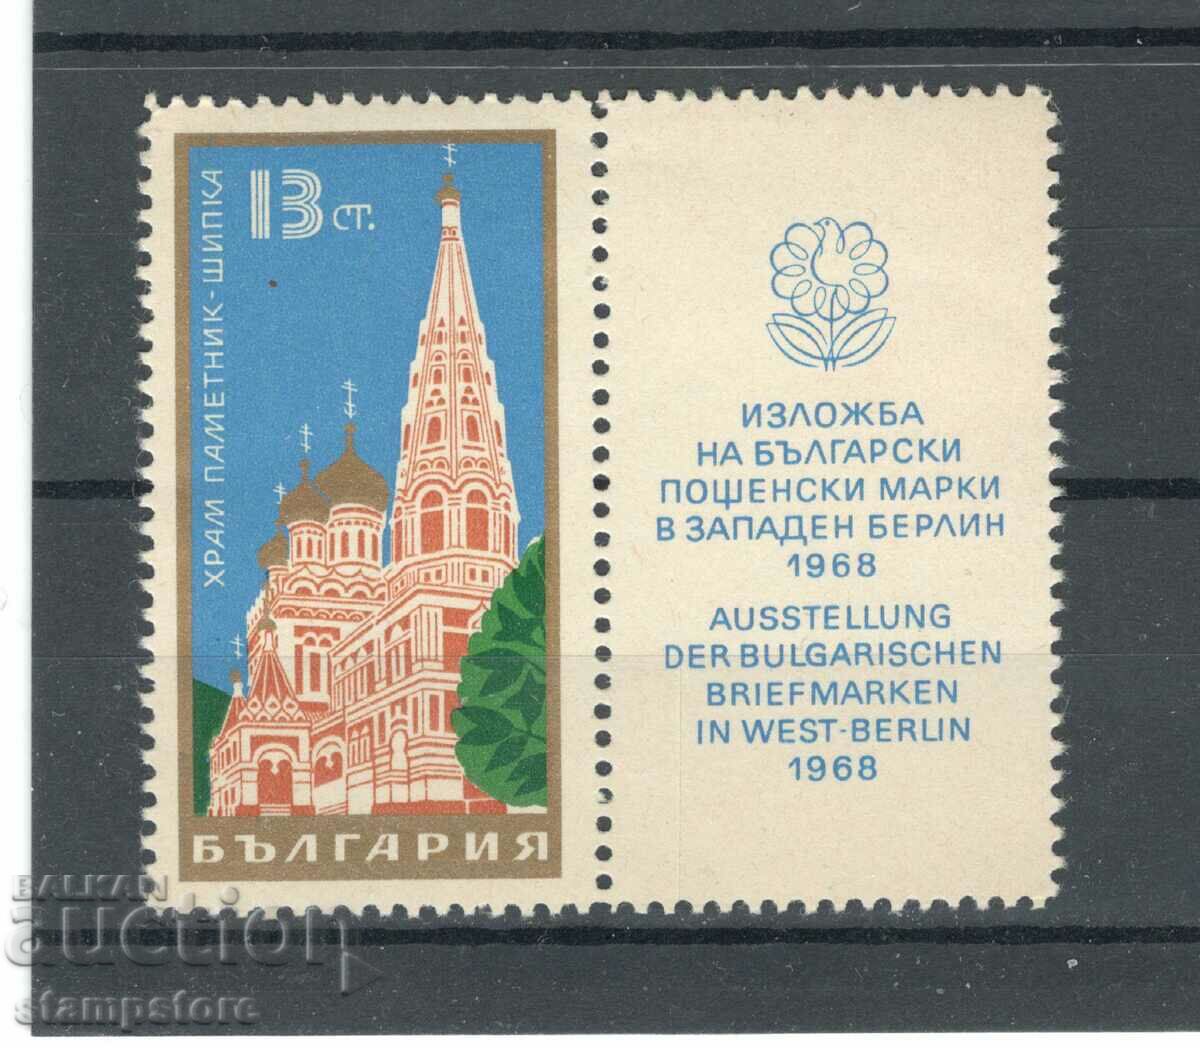 Μνημείο ναού Shipka